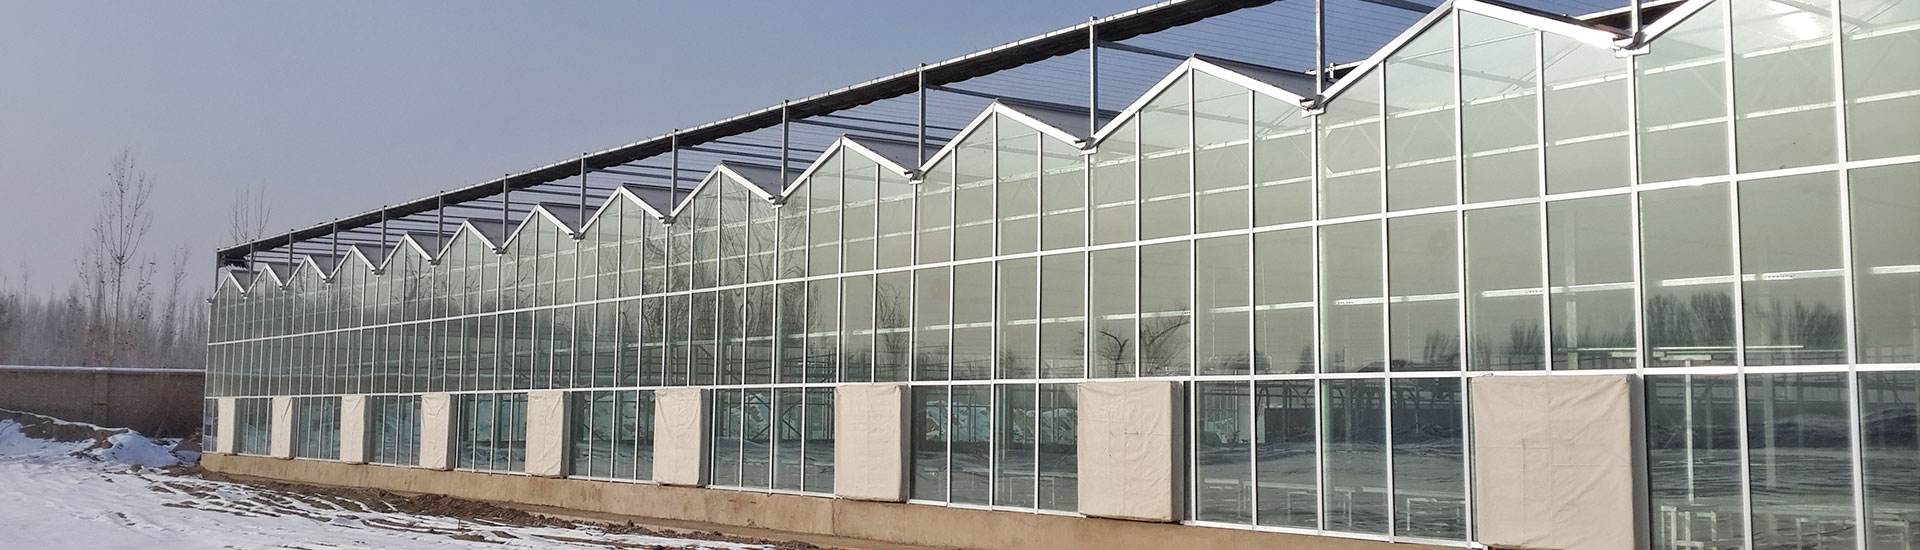 四周玻璃顶部阳光板温室的图片山东潍坊建达温室材料公司图片